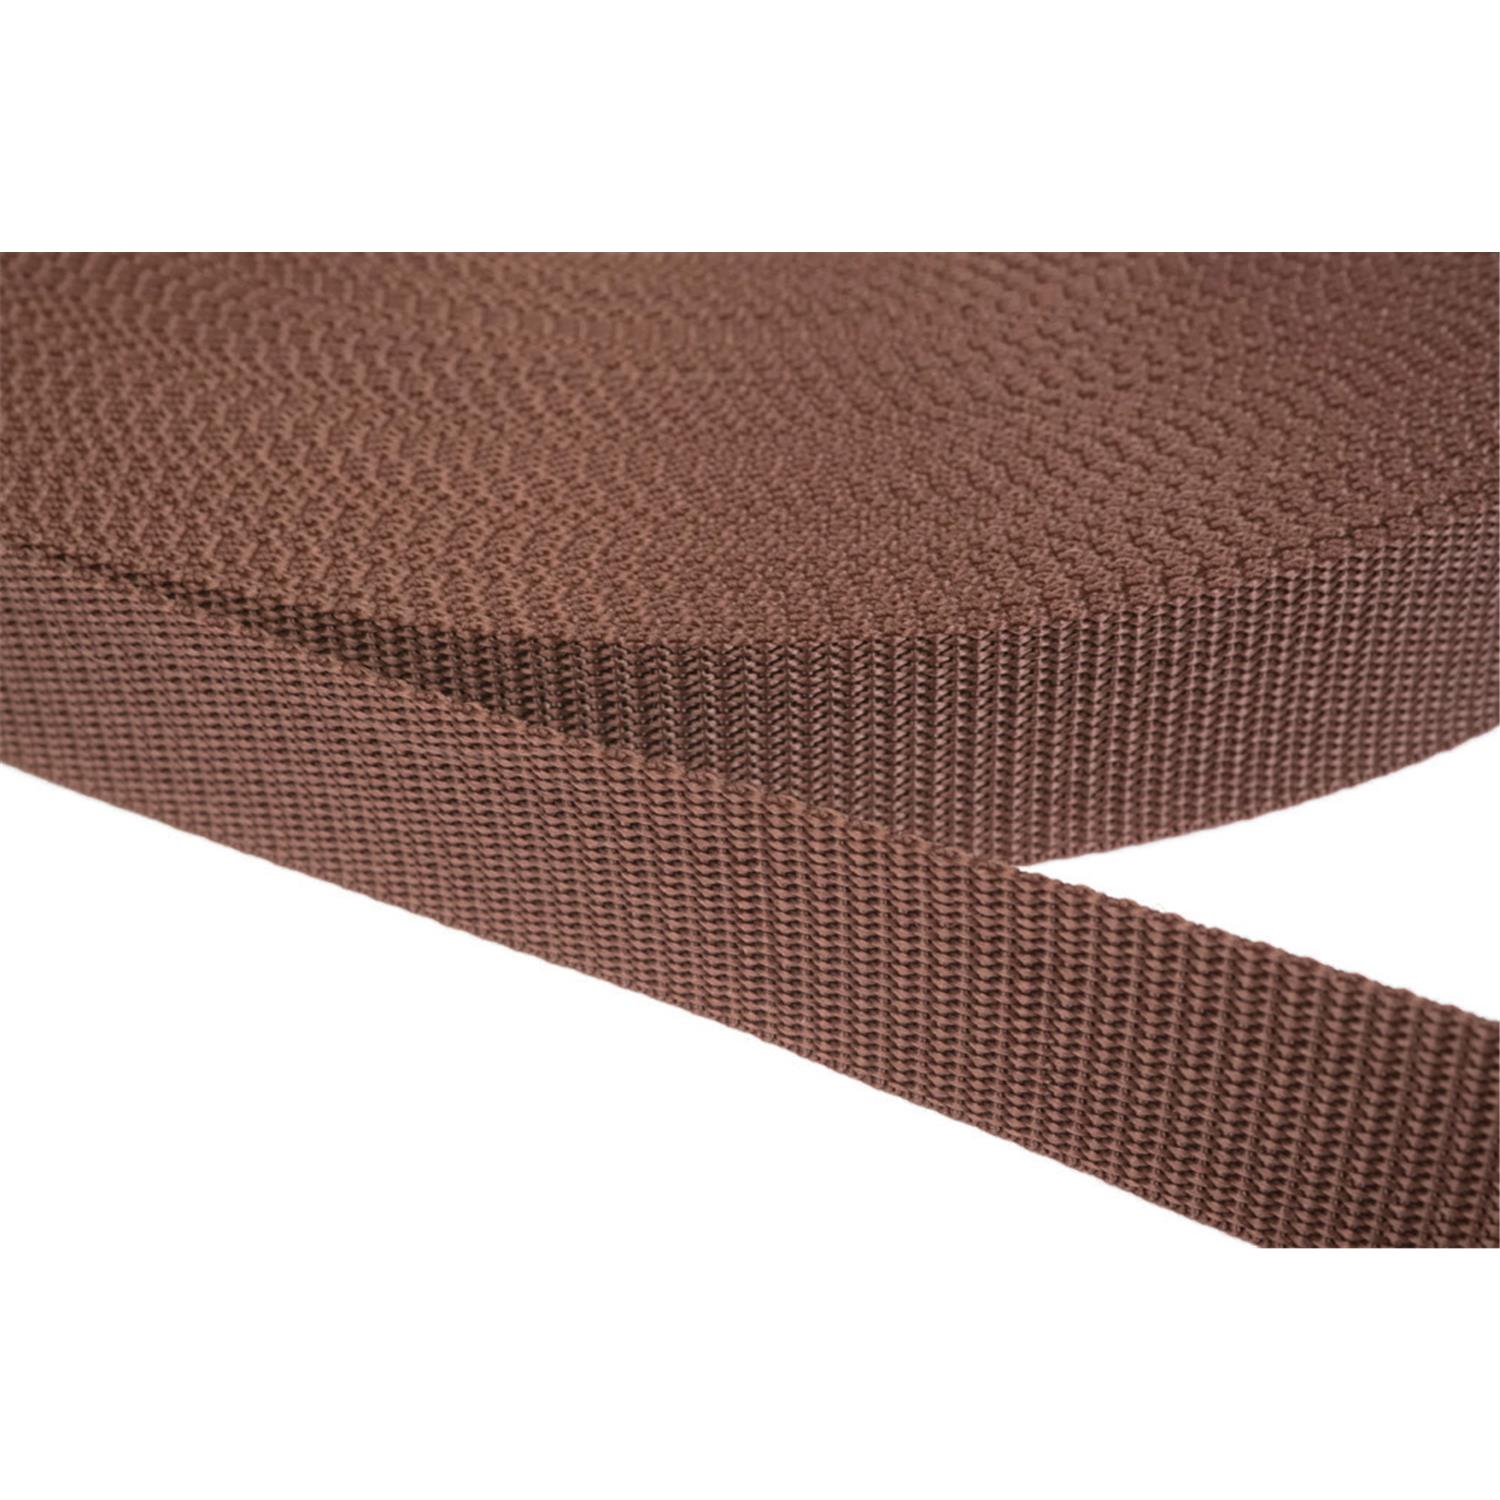 Gurtband 50mm breit aus Polypropylen in 41 Farben 07 - braun 6 Meter